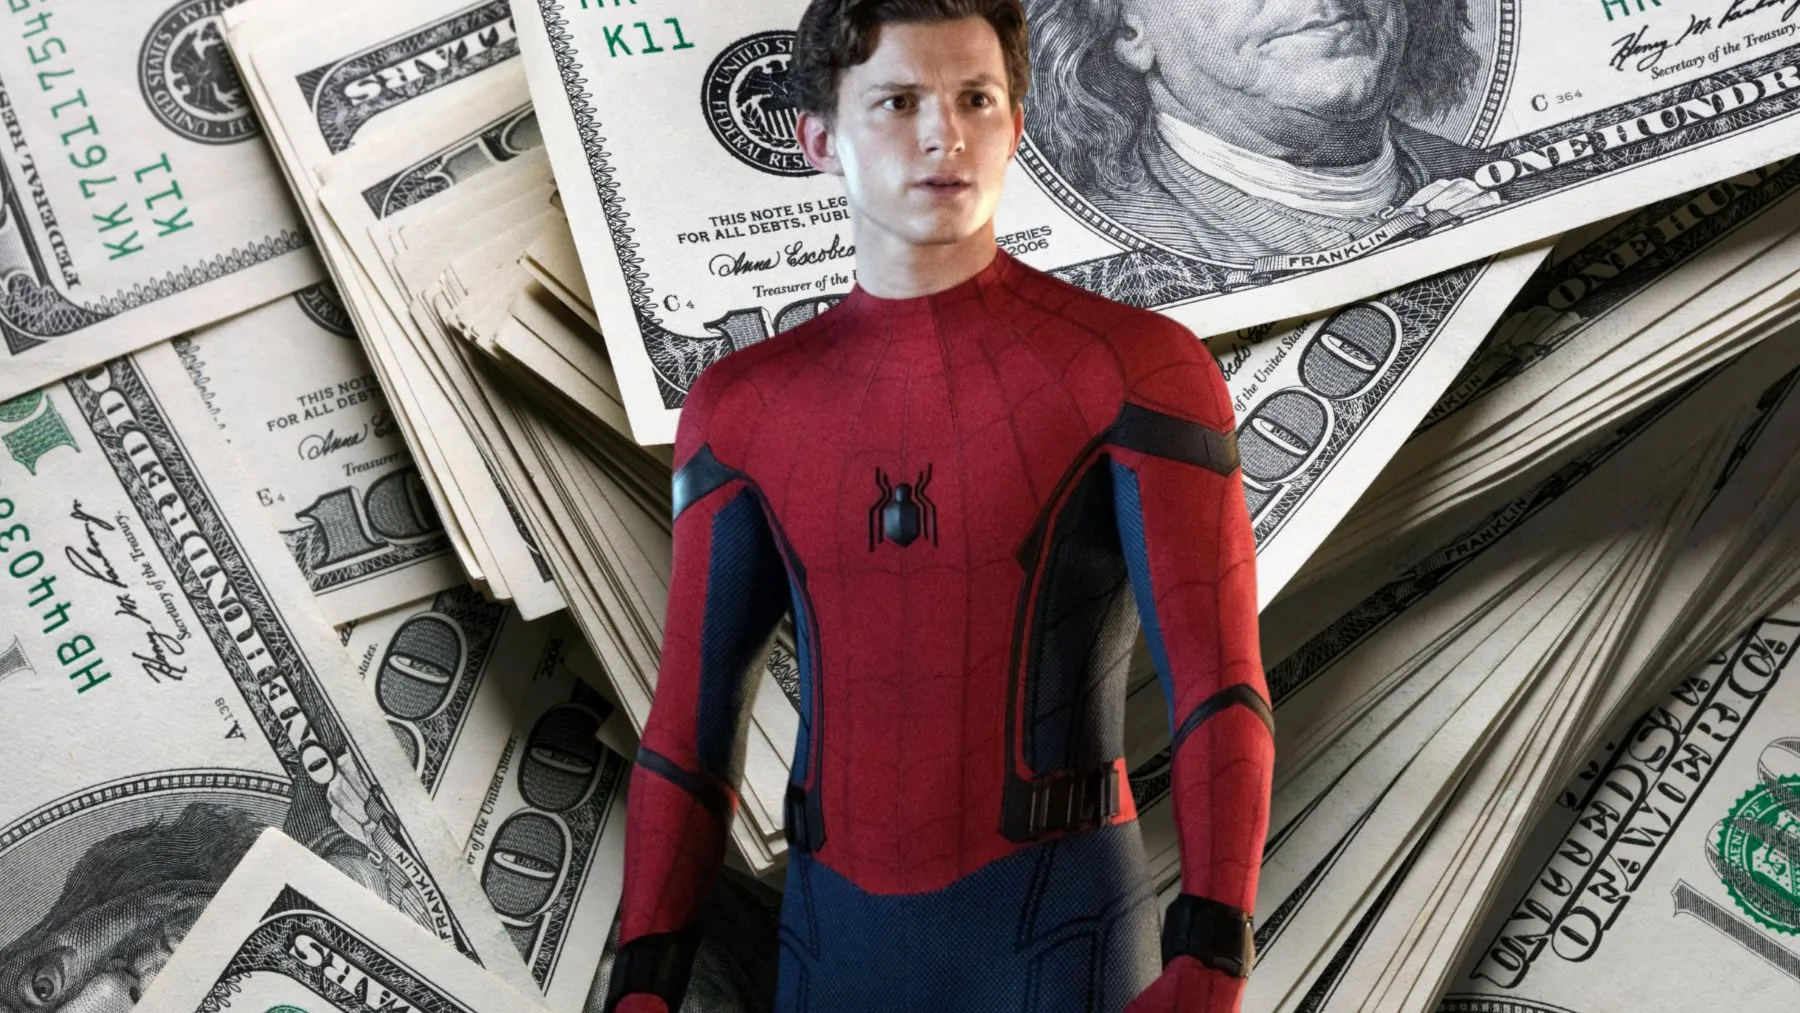 Top 5 bộ phim có doanh thu cao nhất mọi thời đại của Vũ trụ Điện ảnh Marvel